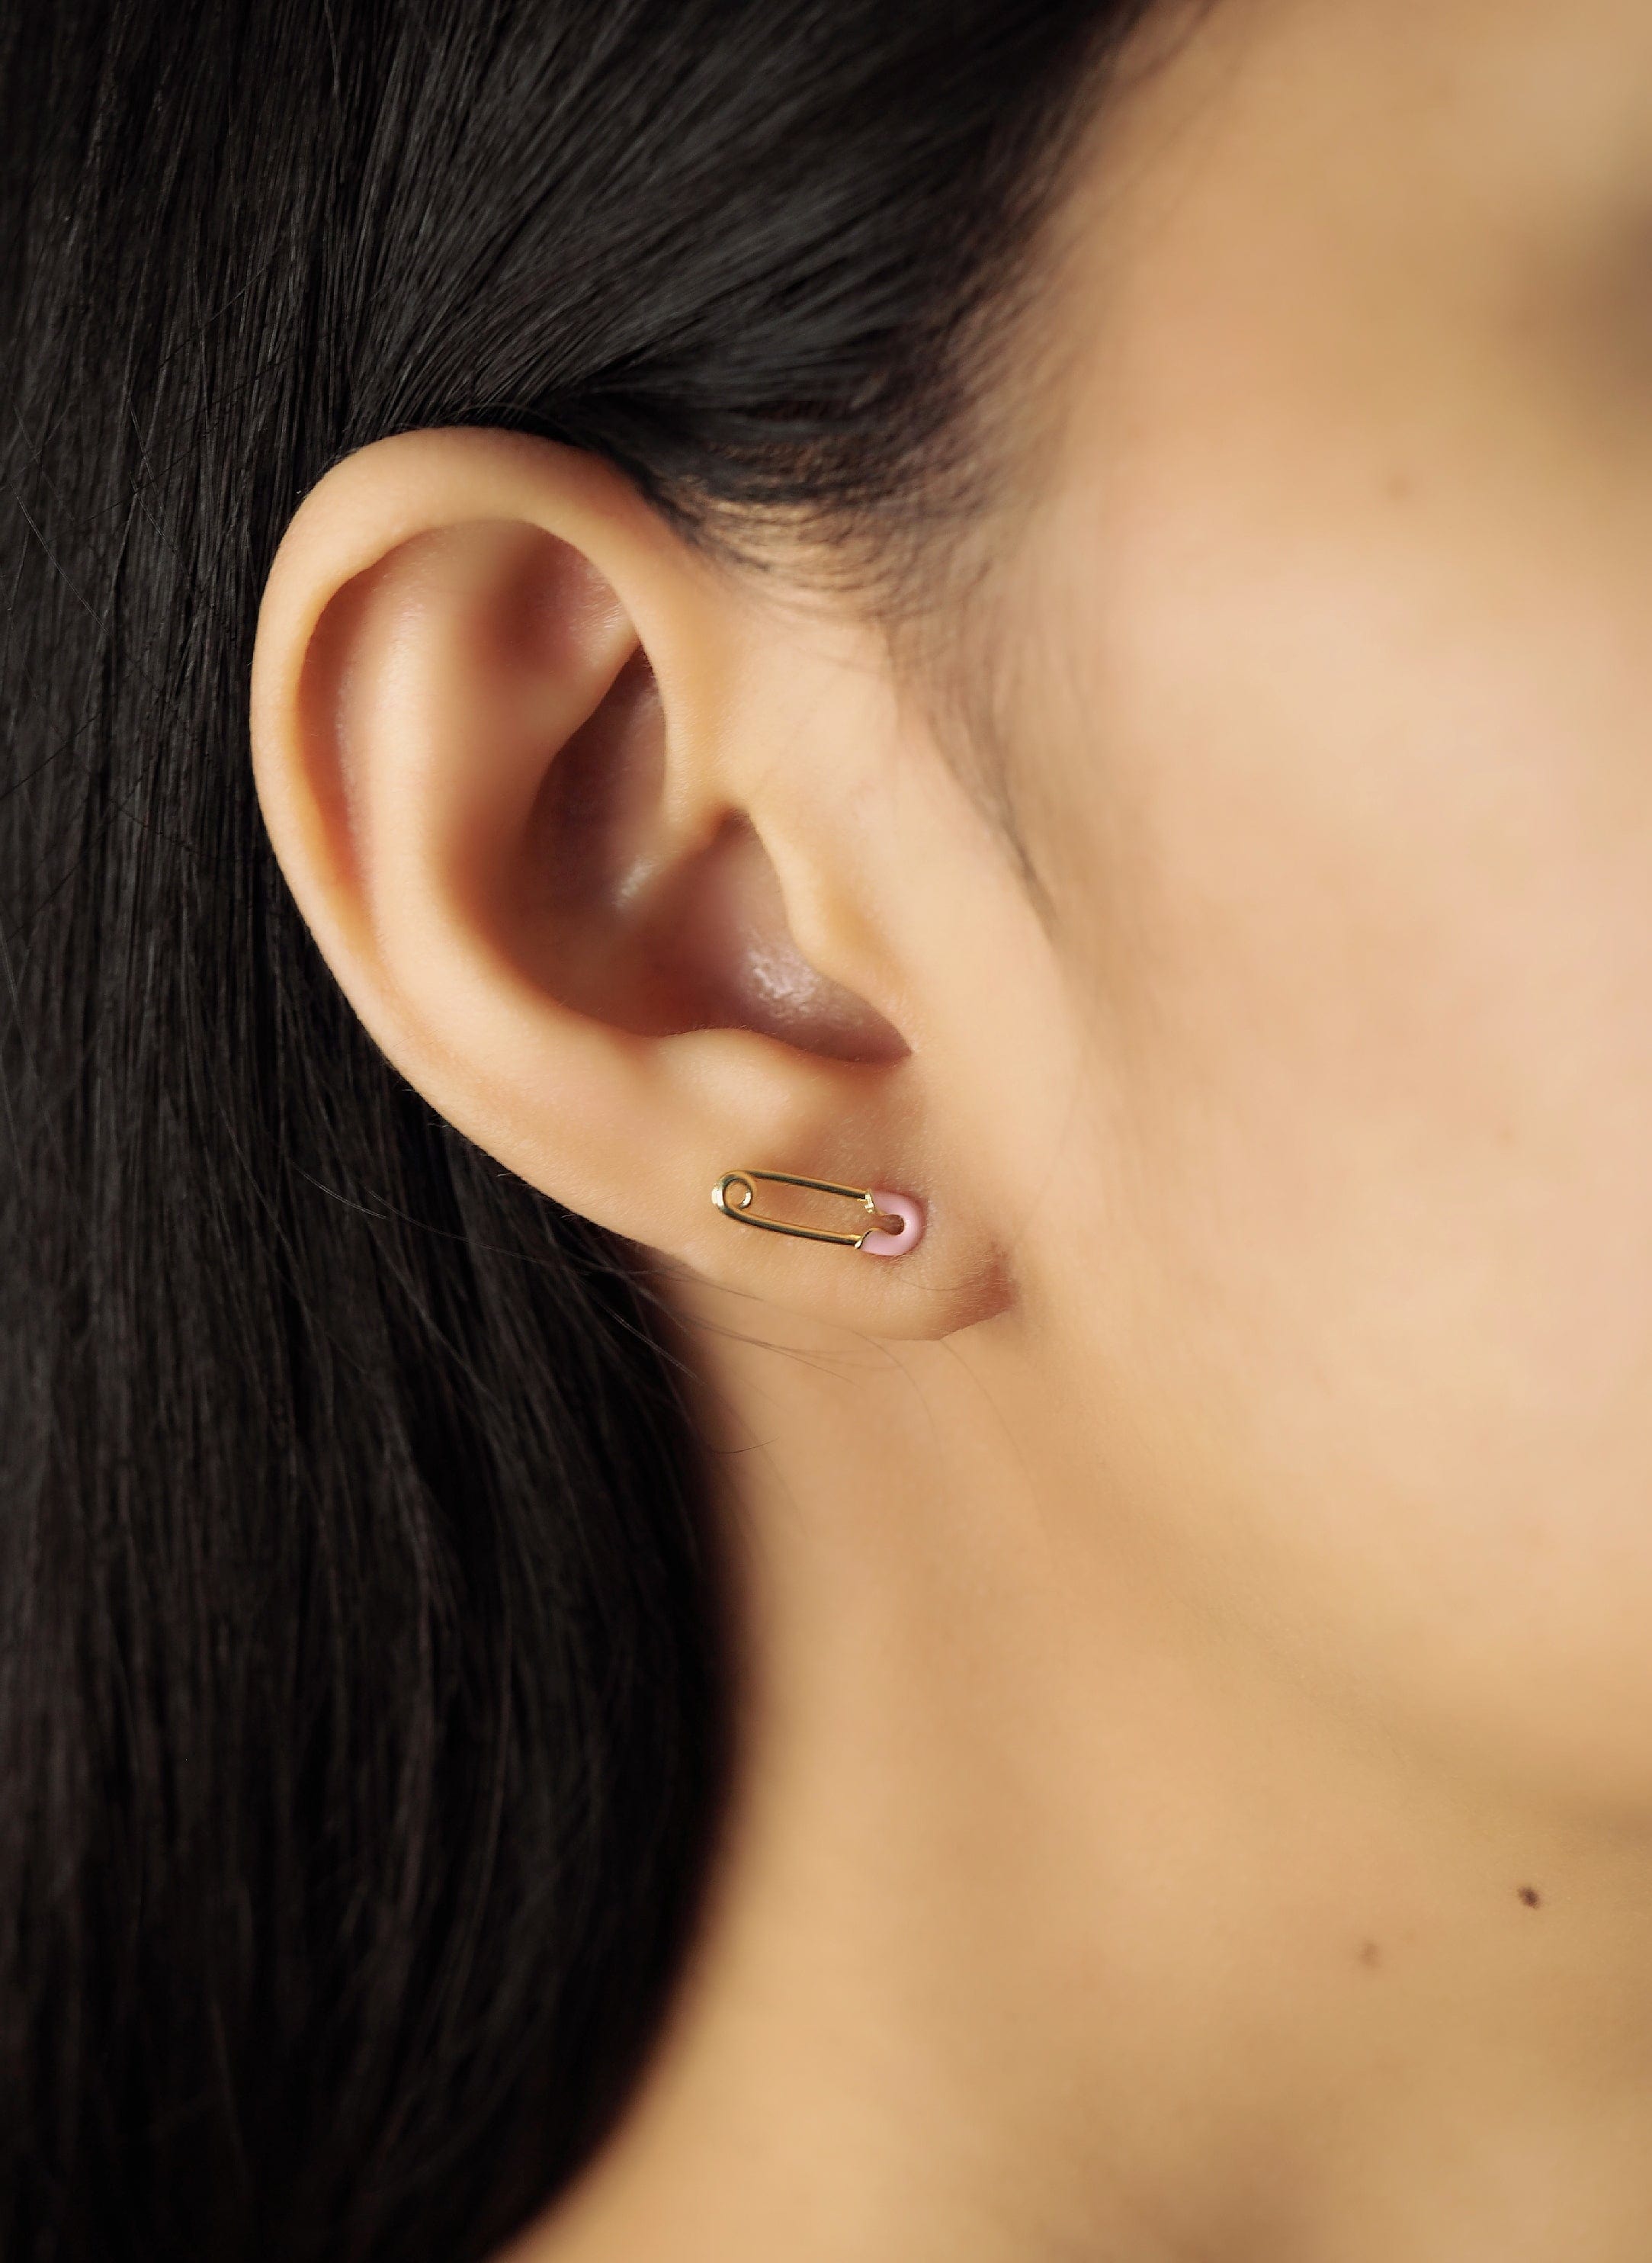 TAI JEWELRY Earrings Enamel Safety Pin Studs